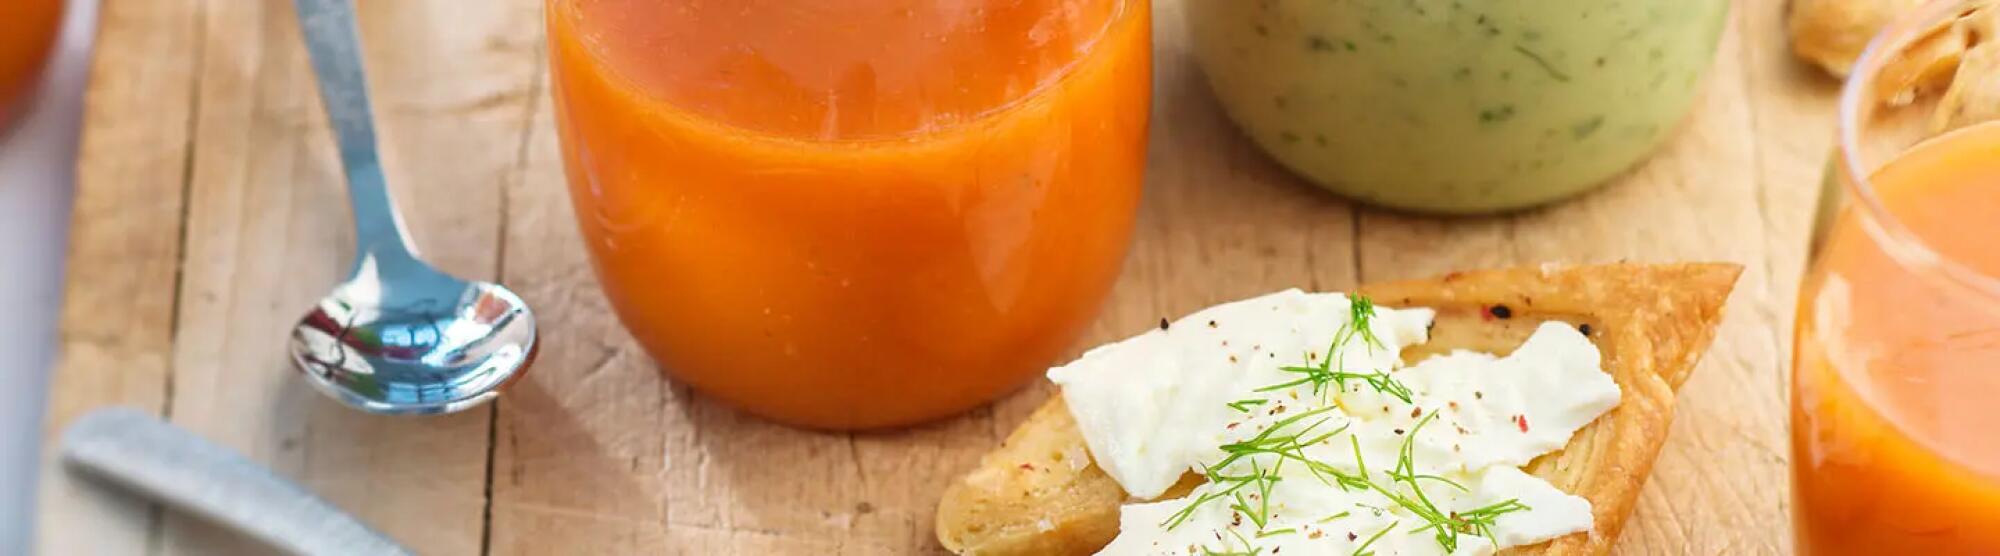 Recette : Gaspacho et feuilletés apéritifs au fromage frais